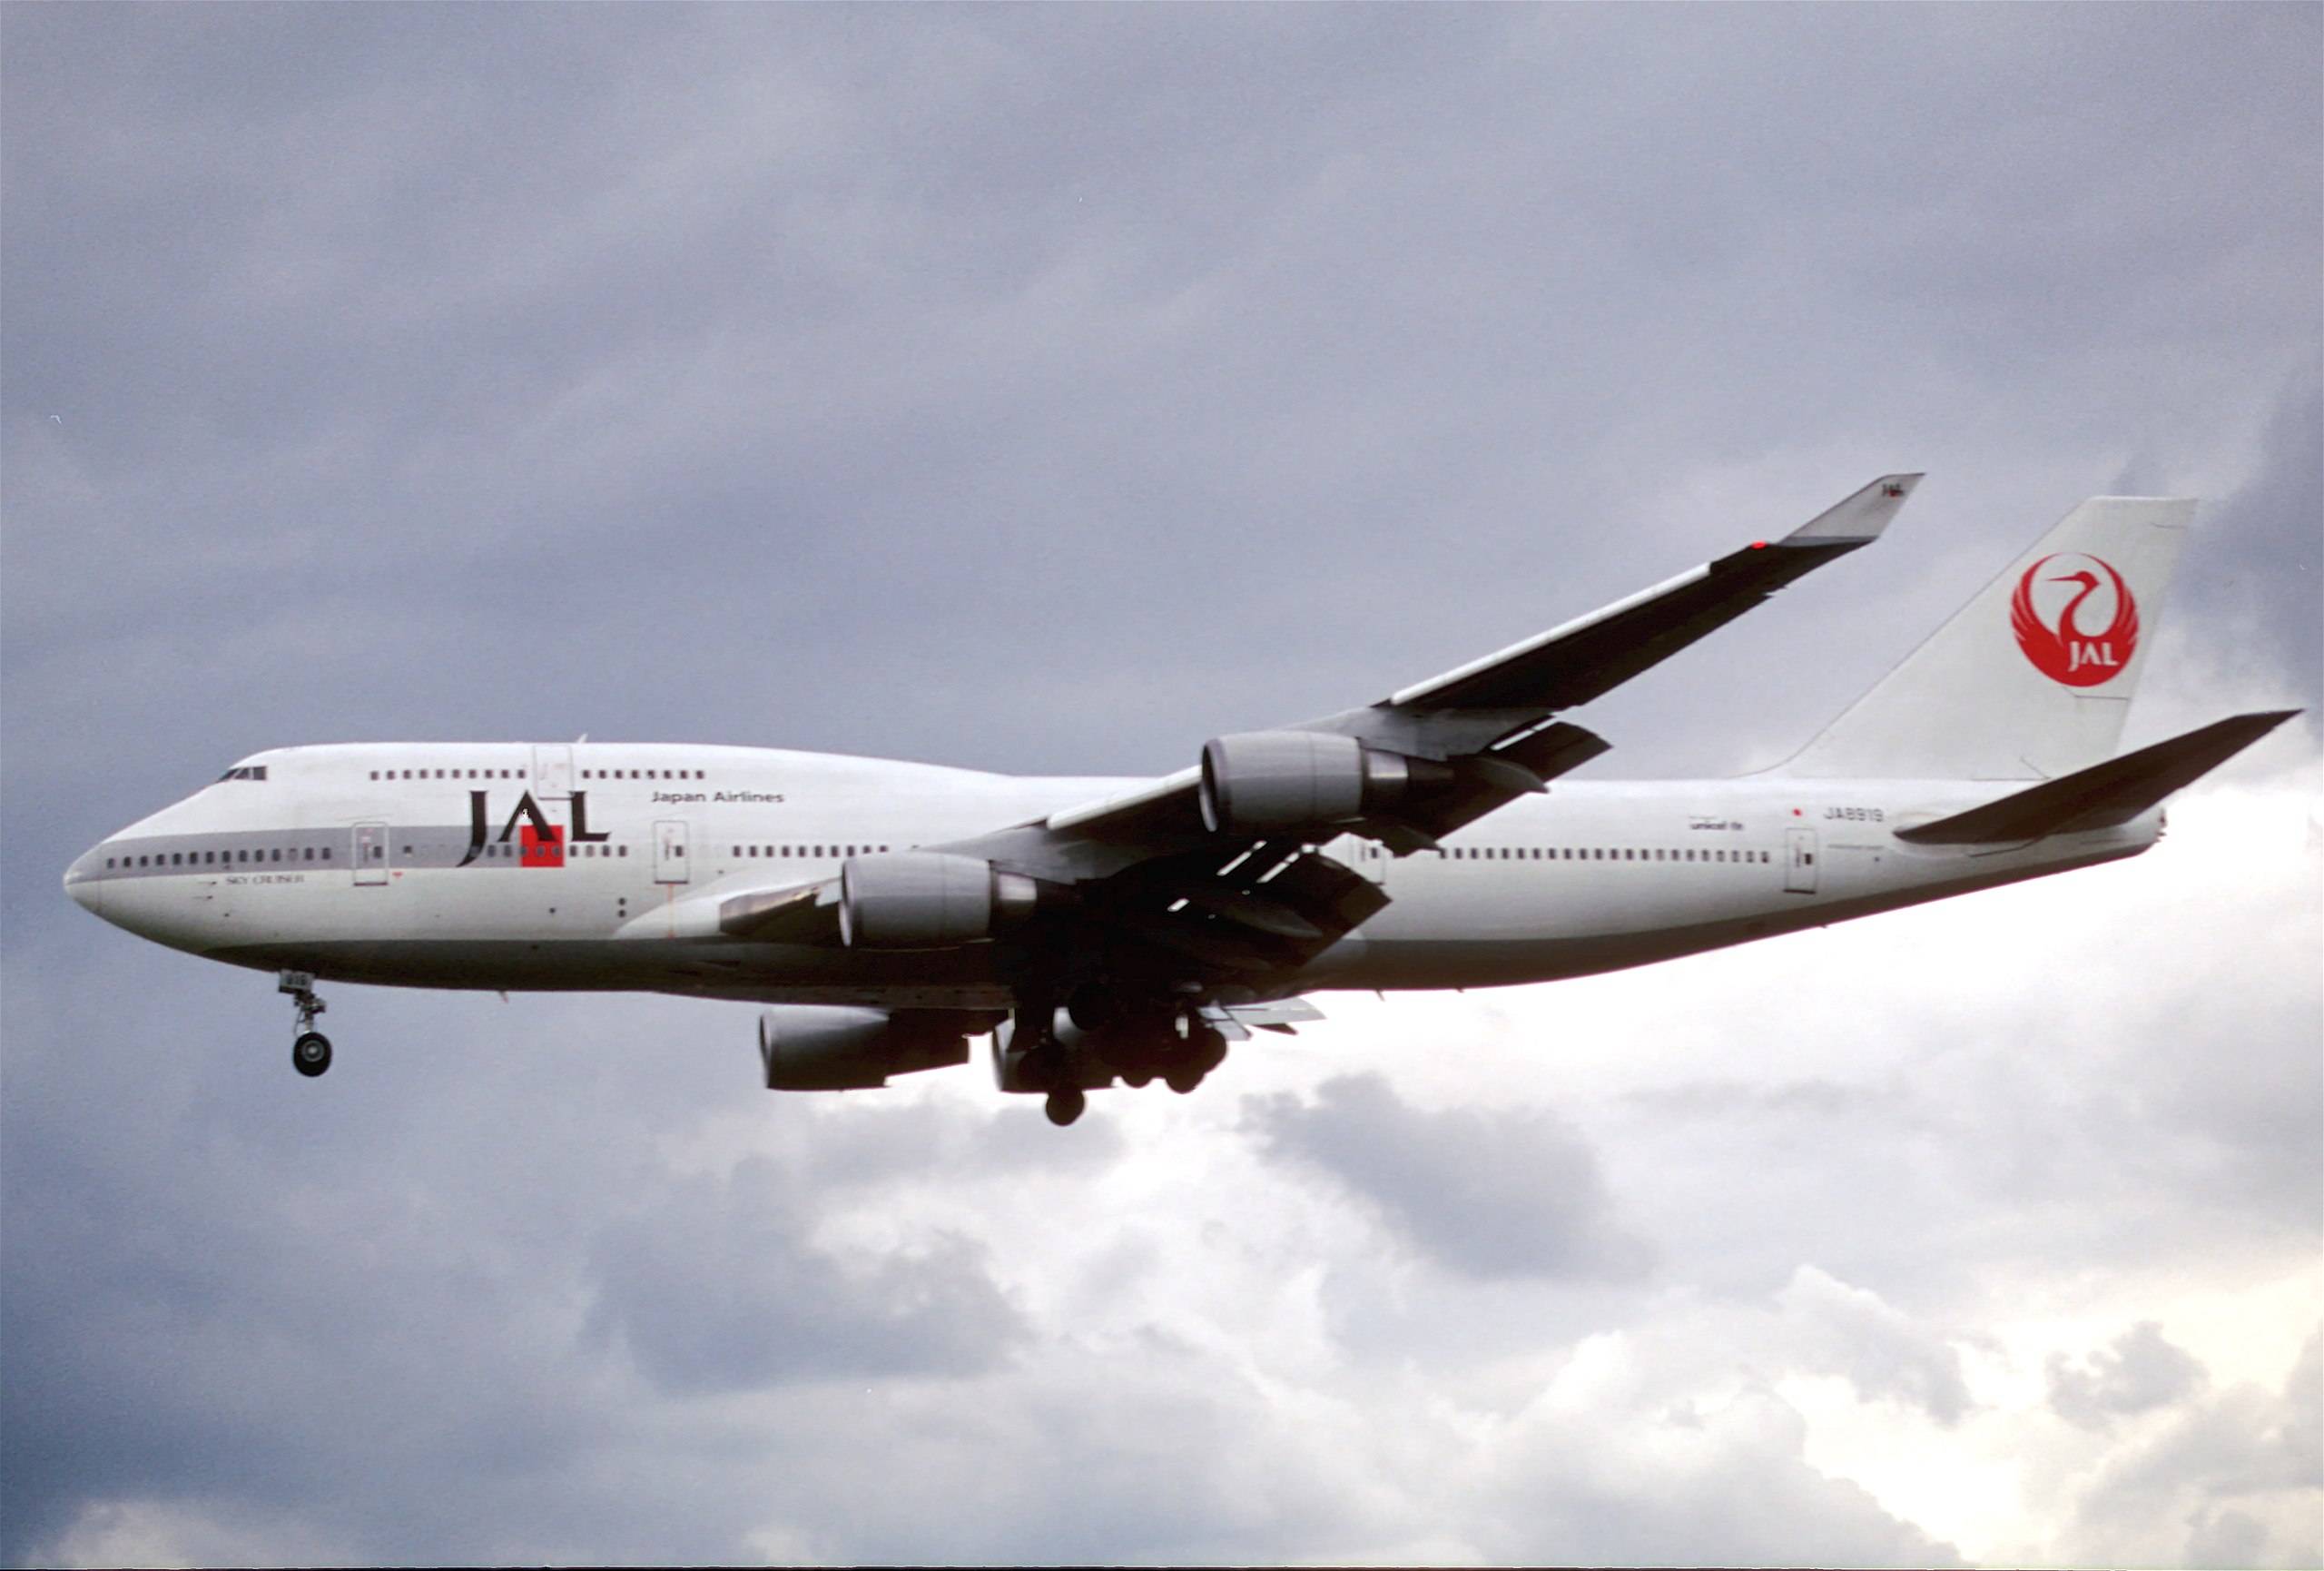 File:238bl - JAL - Japan Airlines Boeing 747-446, JA8919@LHR,24.05 